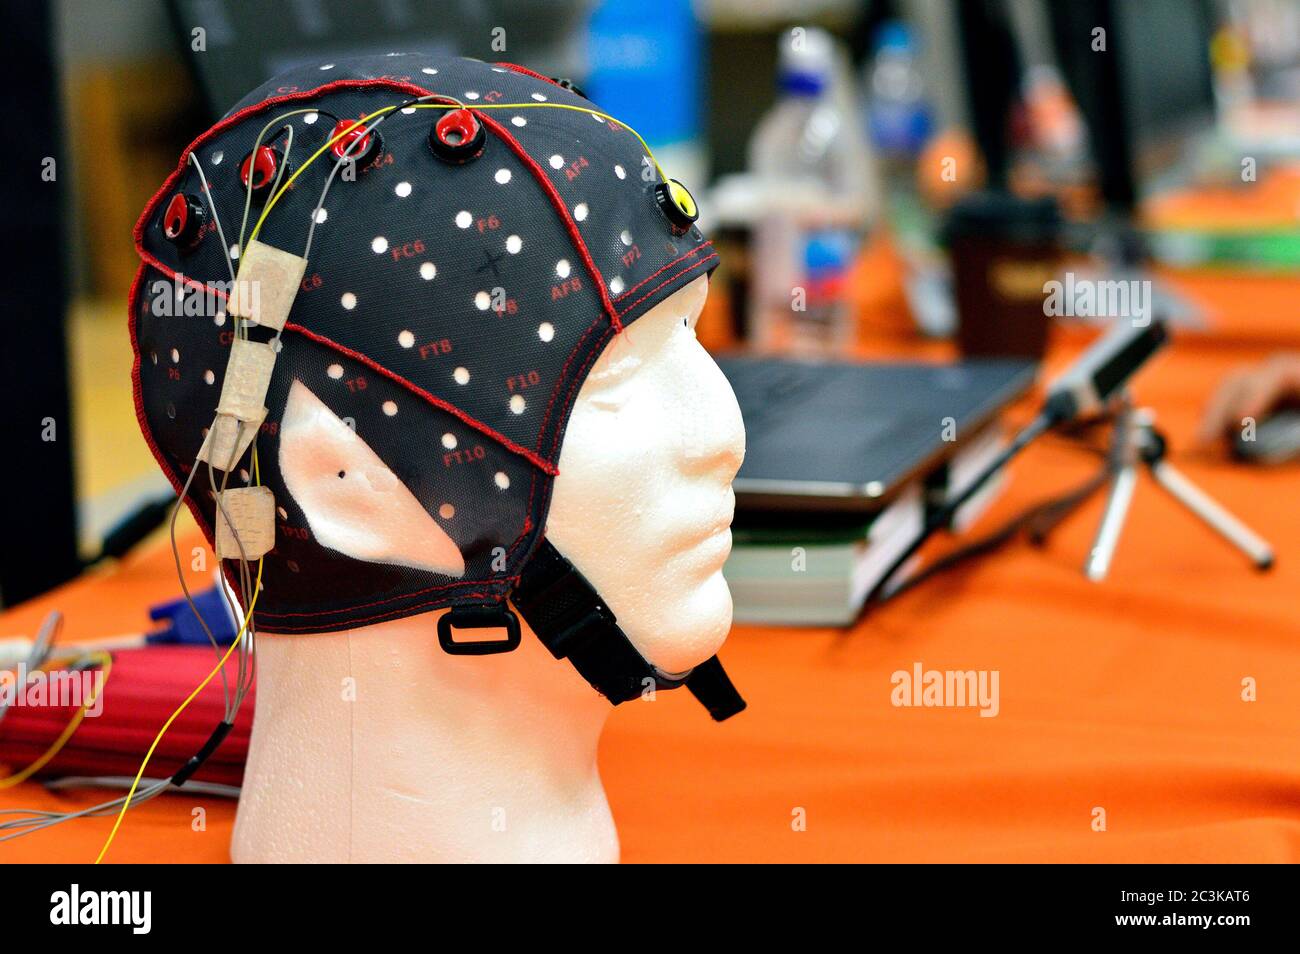 Kopfkappe mit EEG-Kopfplatte mit flachen Metallscheiben (Elektroden), die an einem Kopfmodell mit Laptop-Verwackelung im Hintergrund befestigt sind. Stockfoto